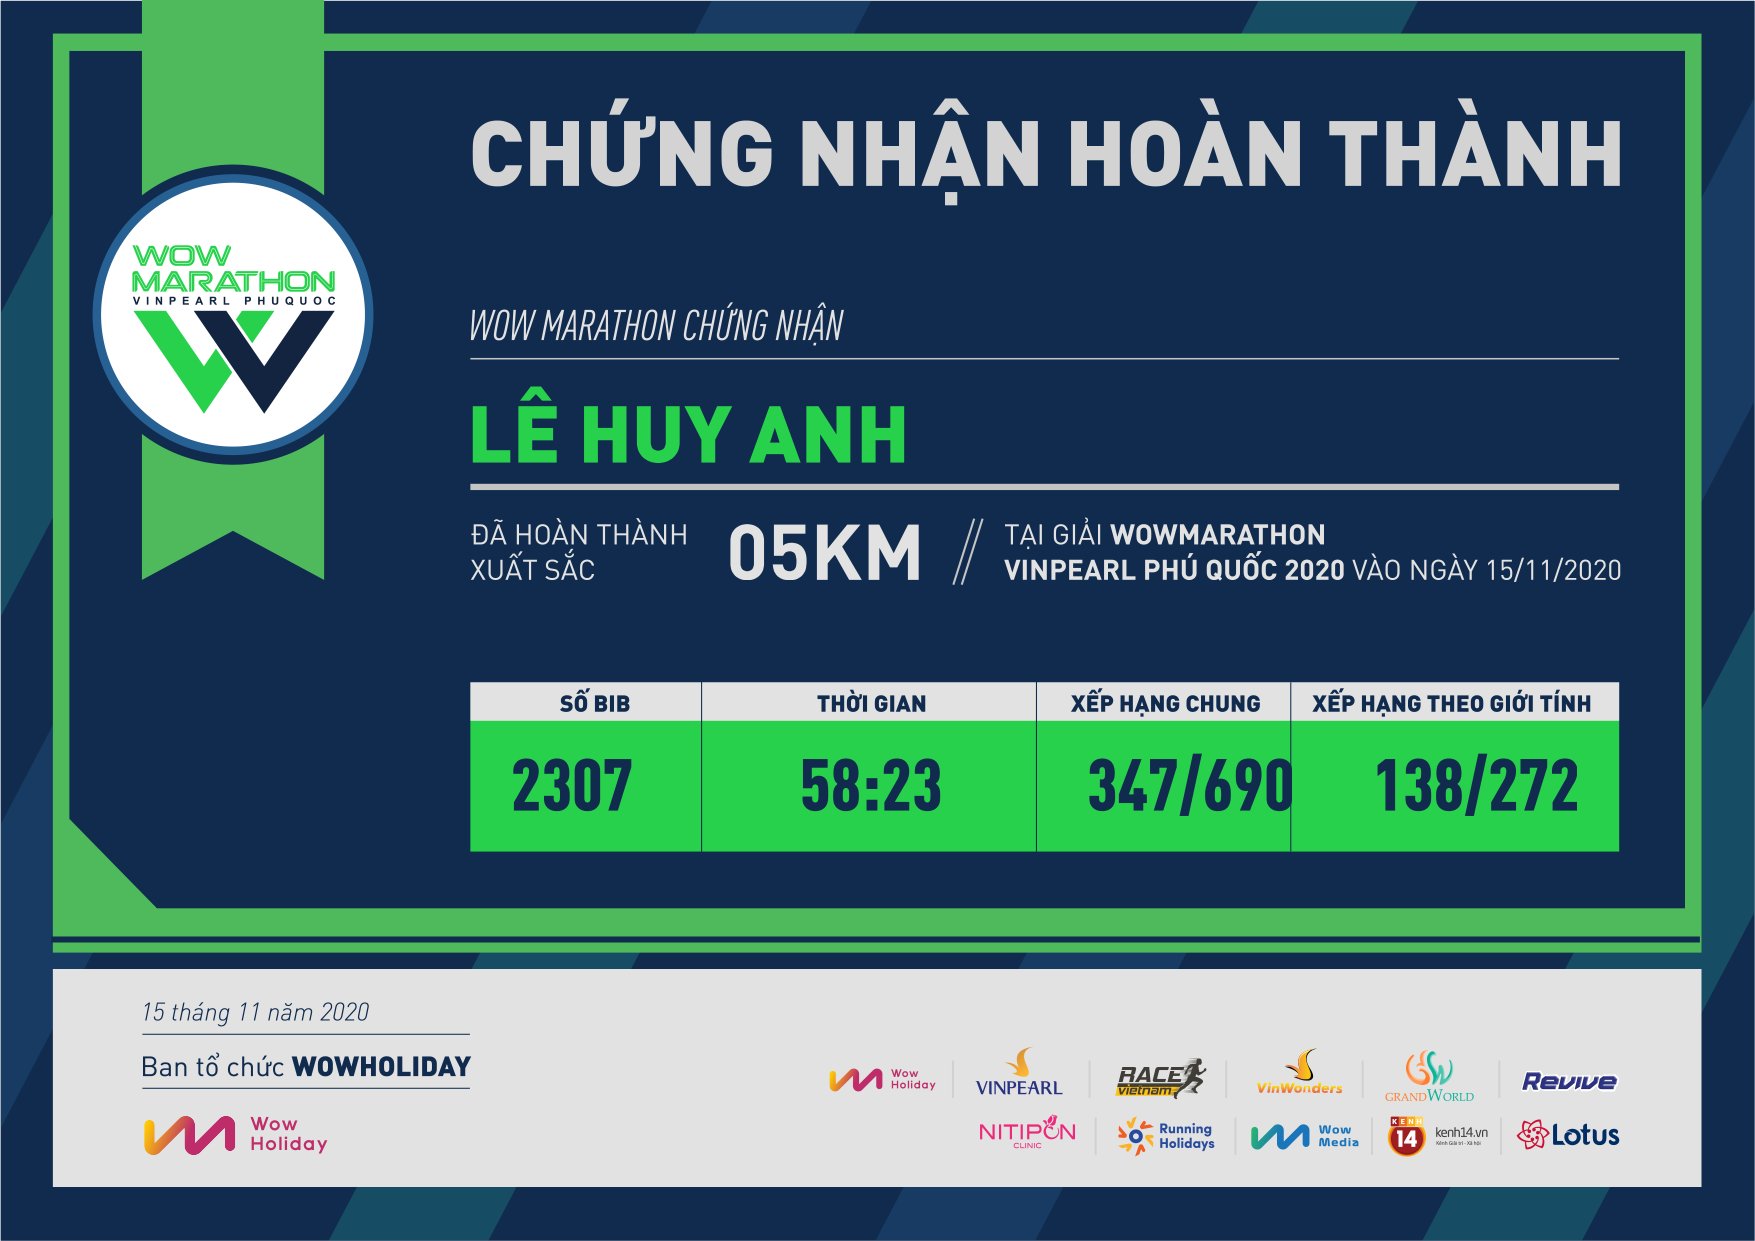 2307 - Lê Huy Anh